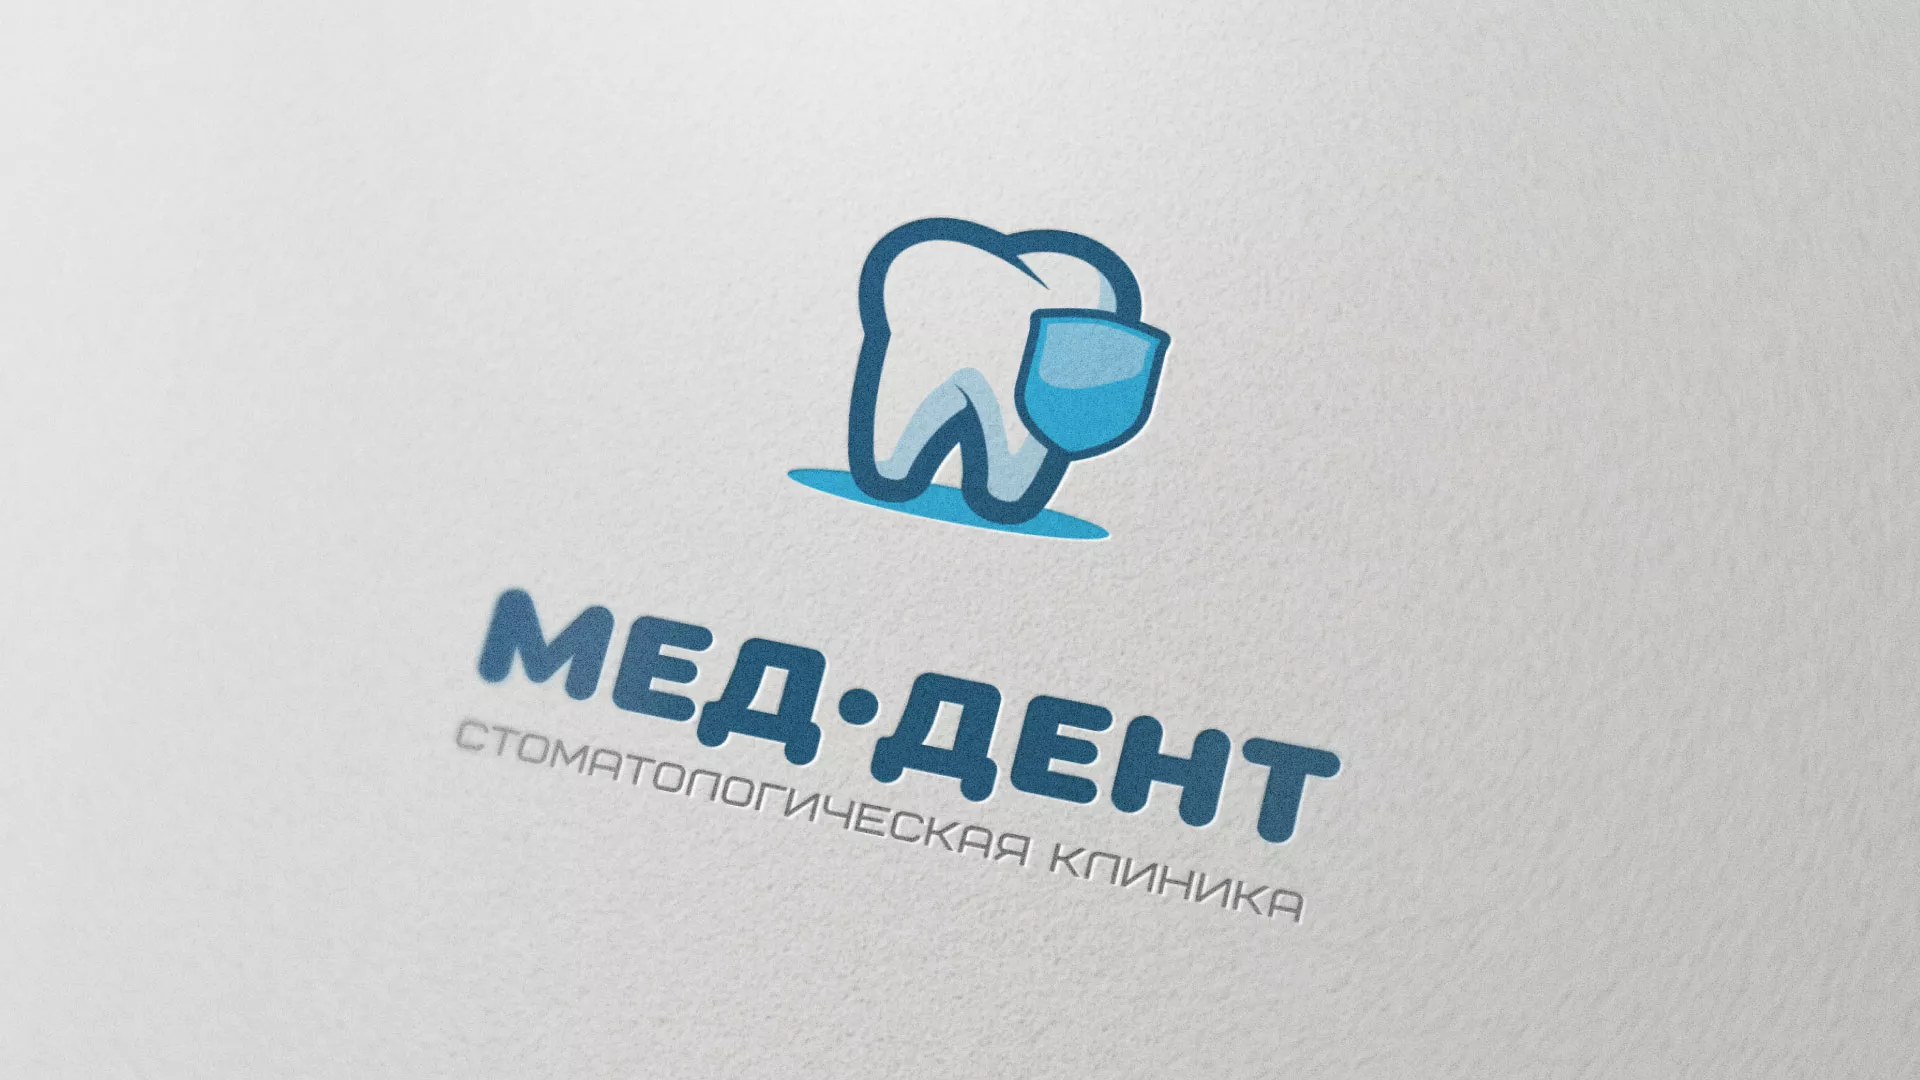 Разработка логотипа стоматологической клиники «МЕД-ДЕНТ» в Шенкурске